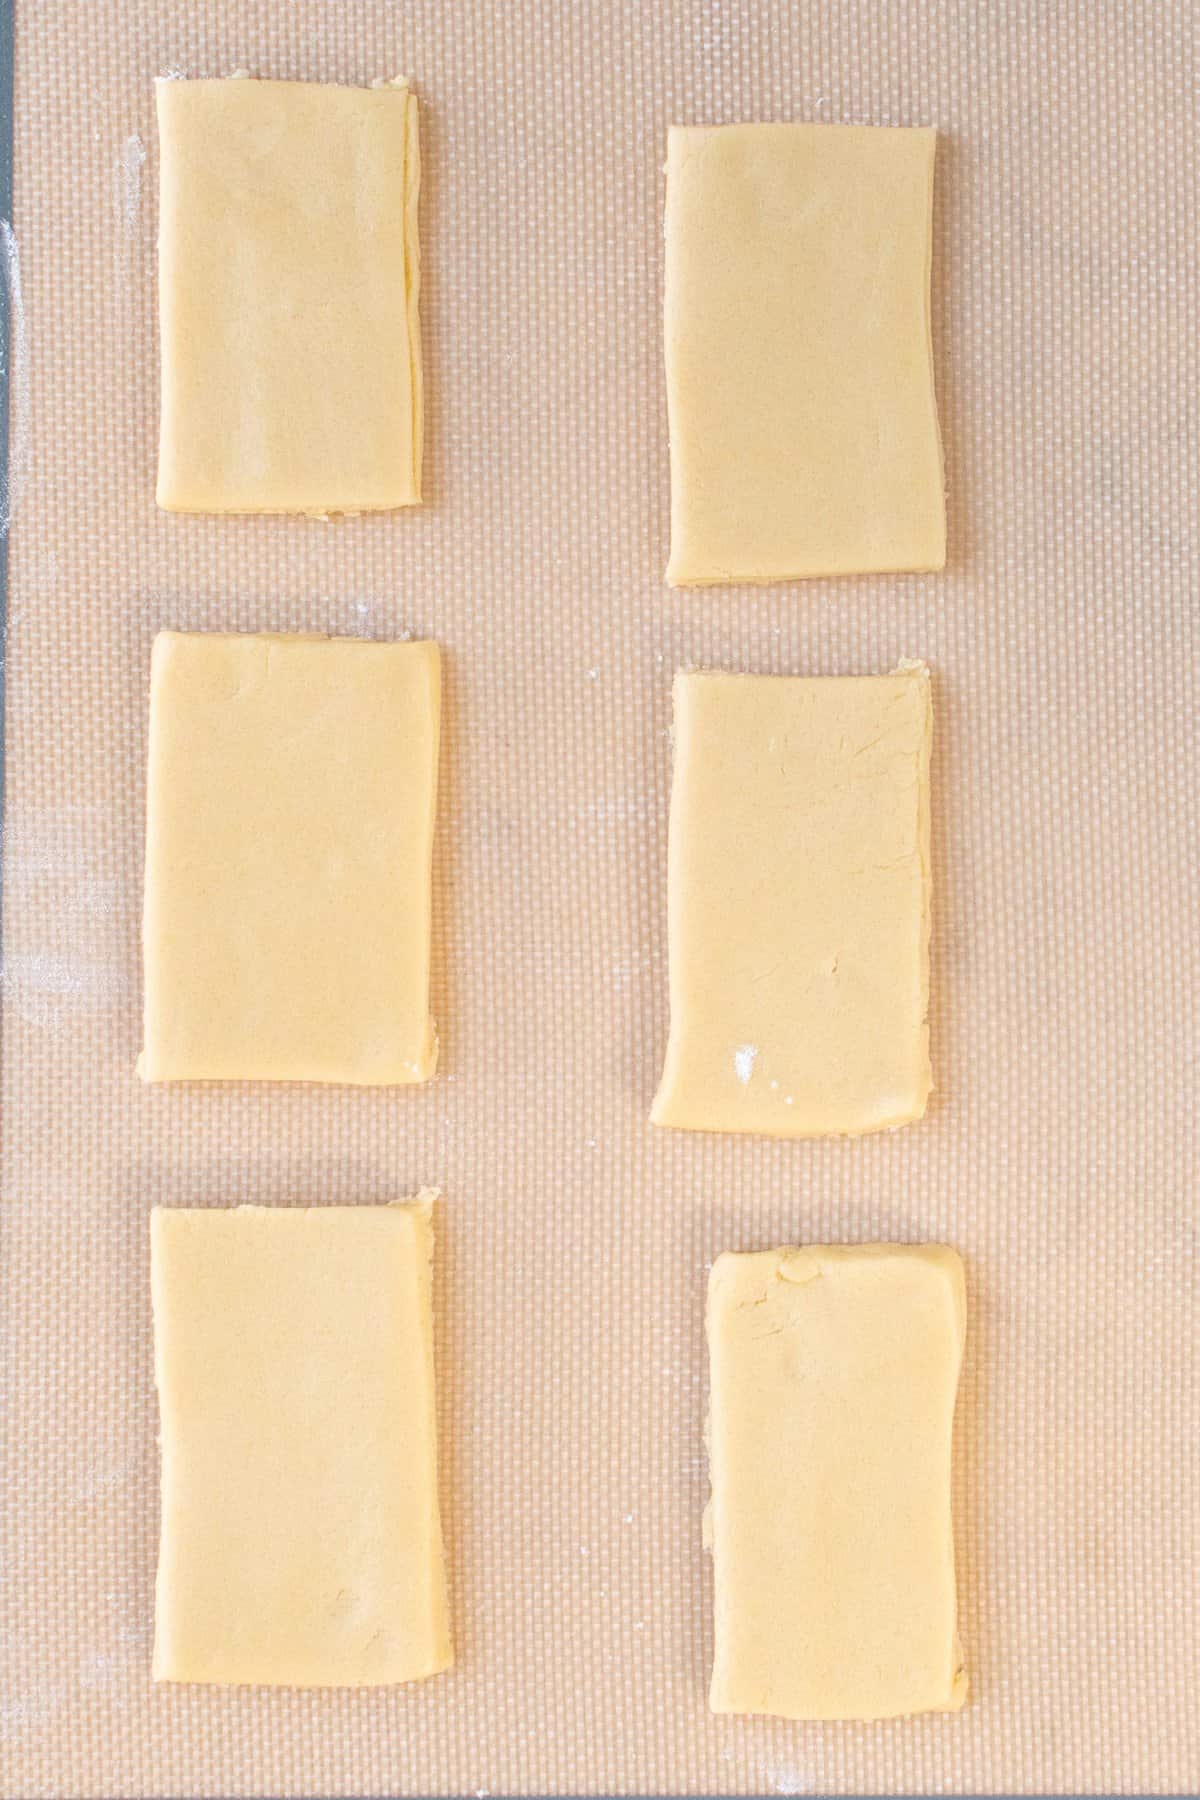 shortbread dough cut into rectangles on parchment paper. 